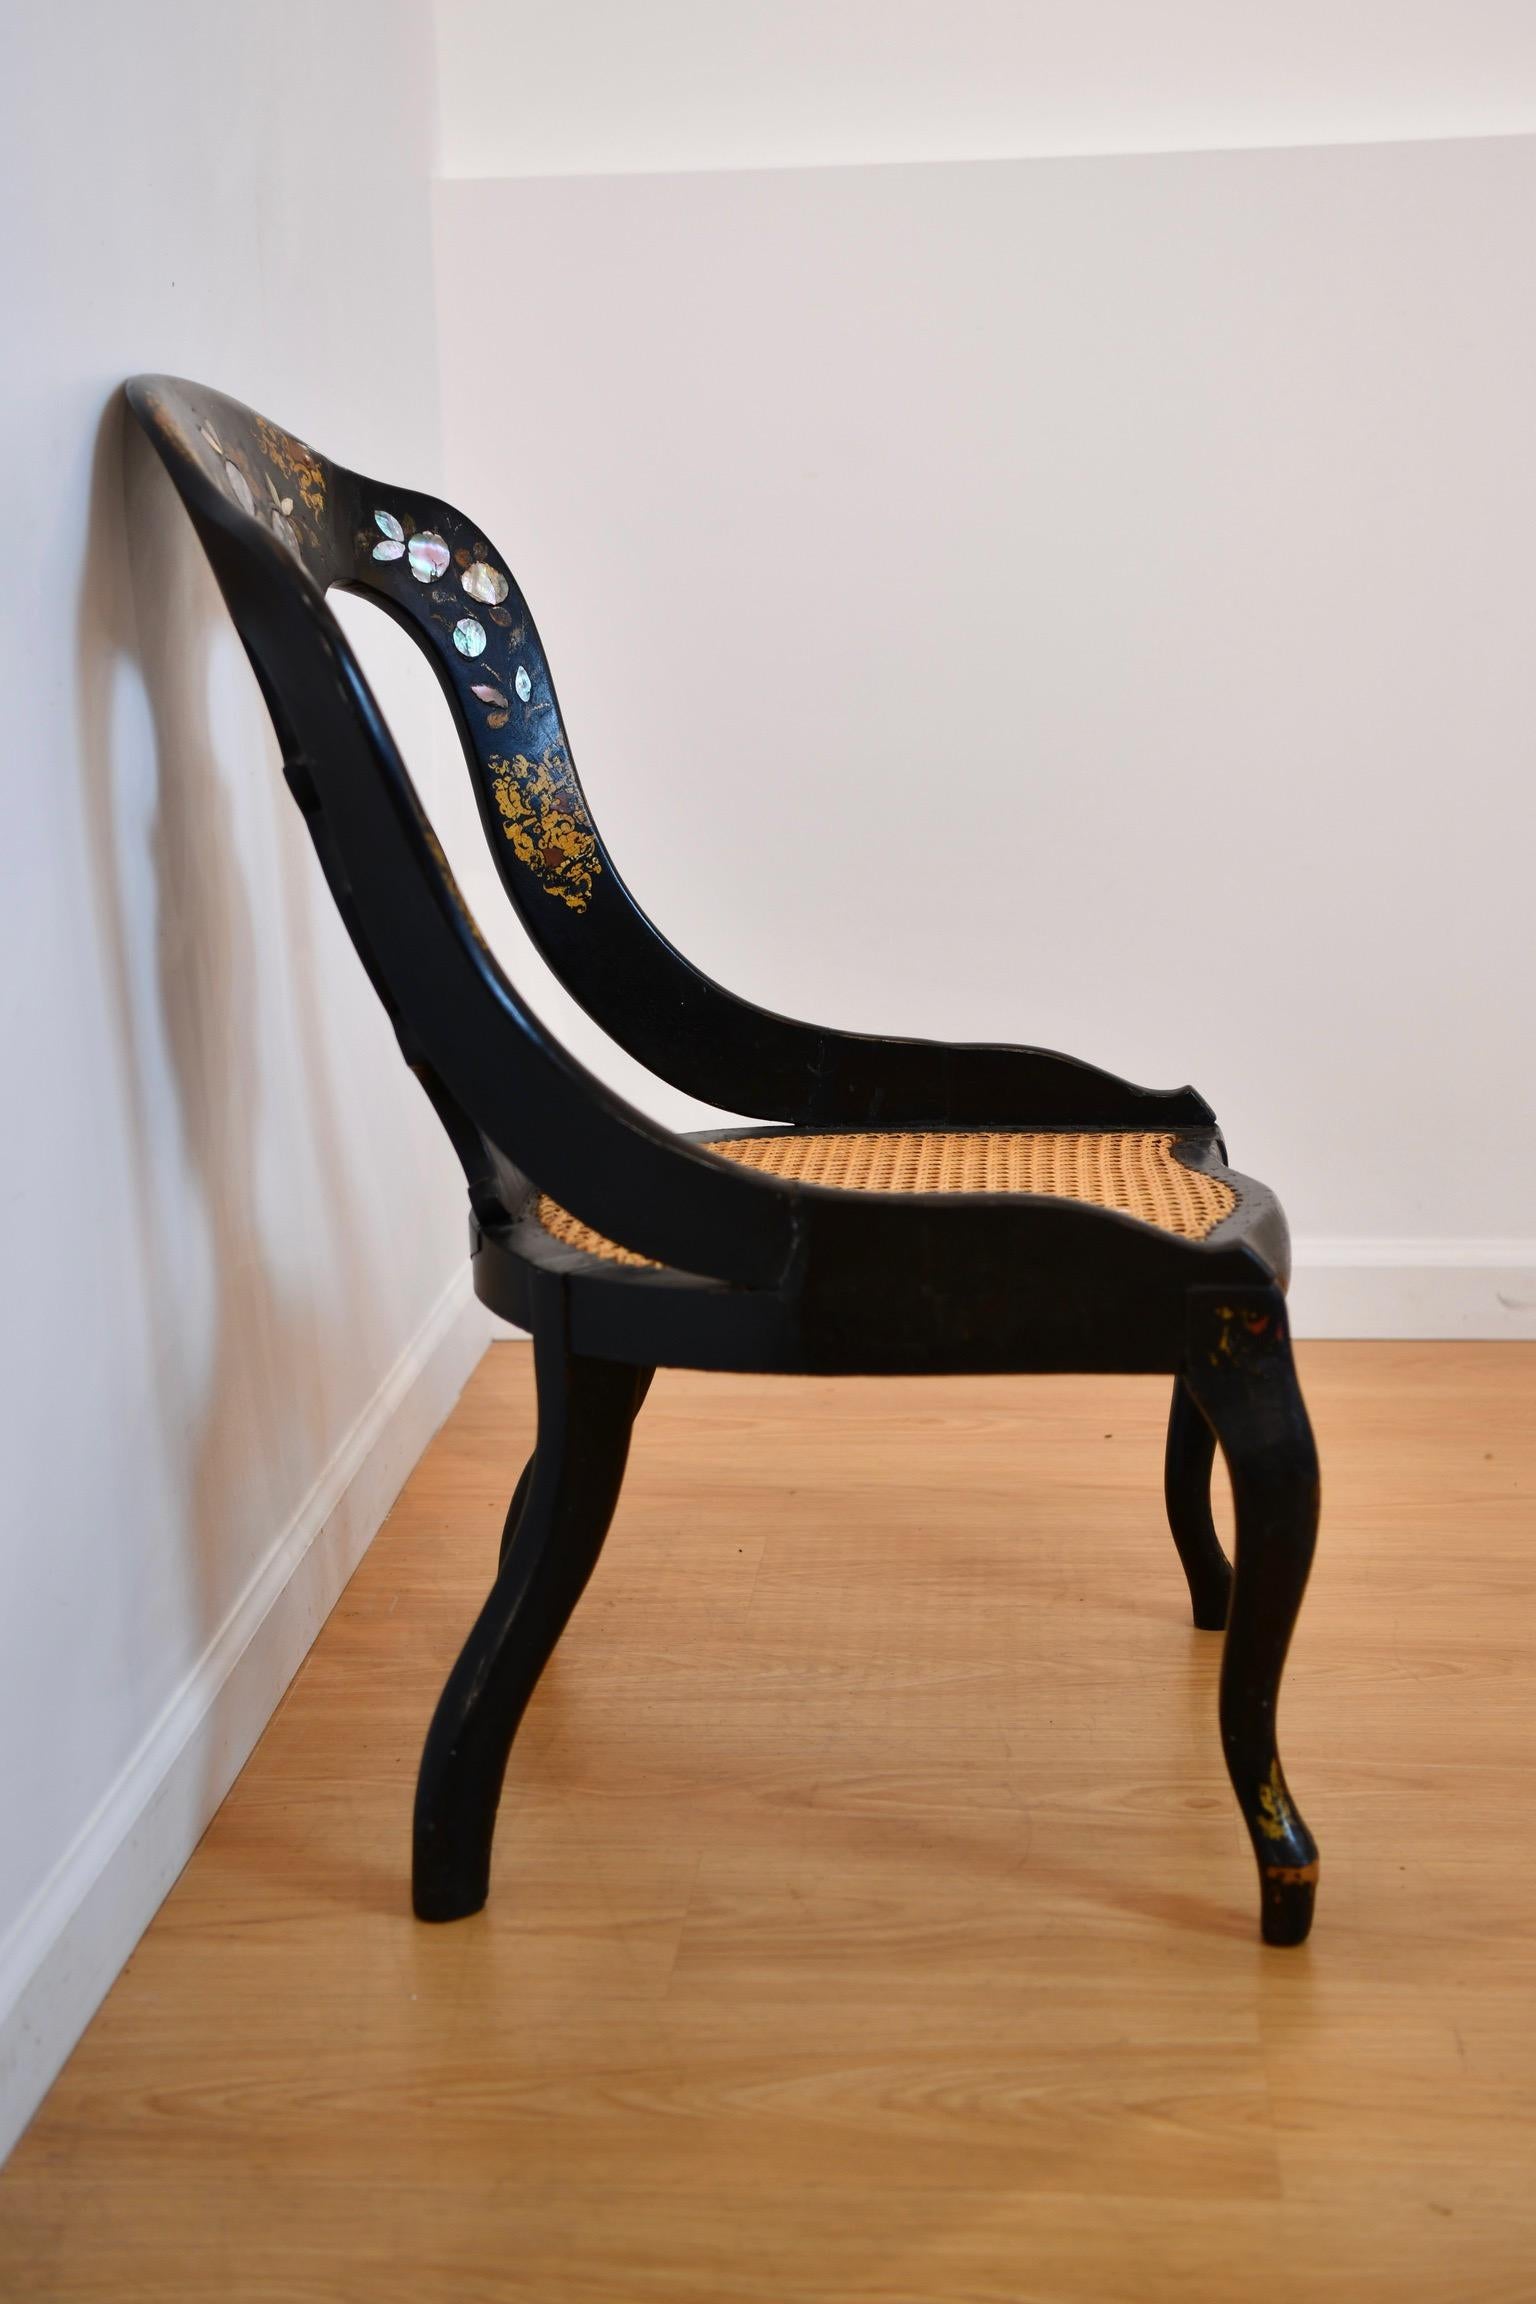 Chaise cannée avec incrustation de nacre et peinture dorée sur le dossier. Peinture décolorée sur les pieds ; probablement récemment ré-encadrée. Dimensions : 33 